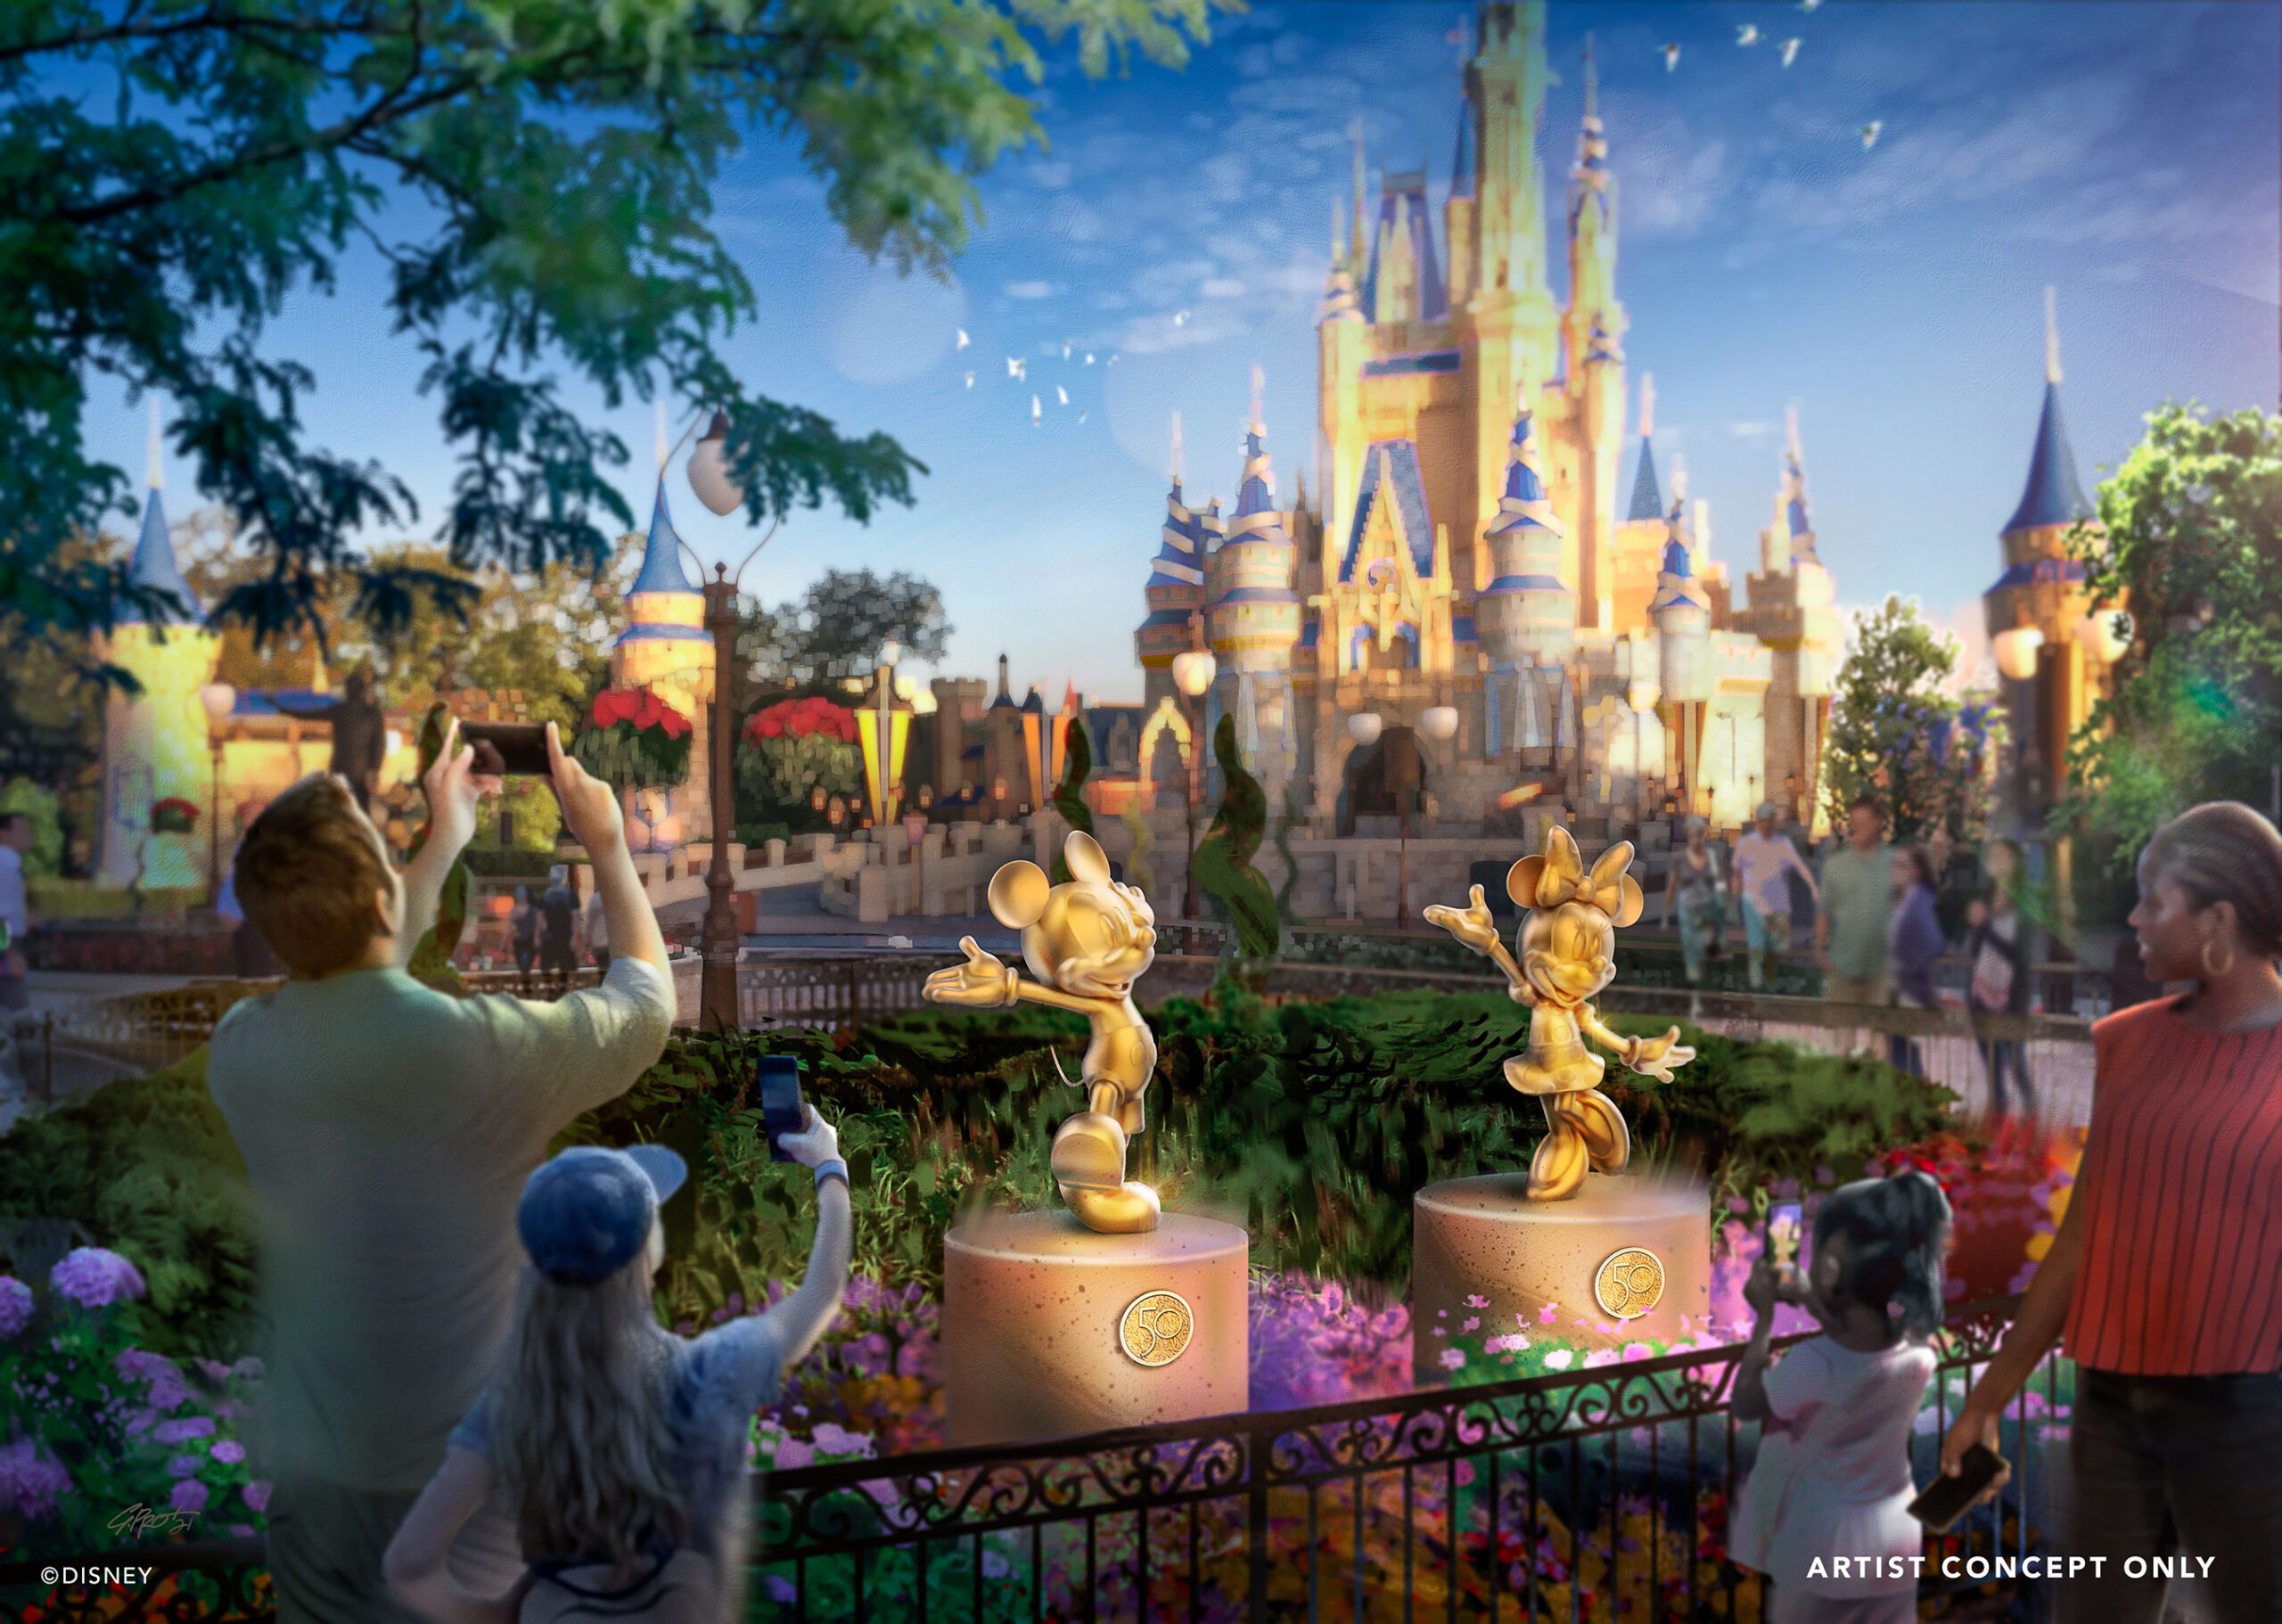 50 golden character sculptures will appear across all Walt Disney World